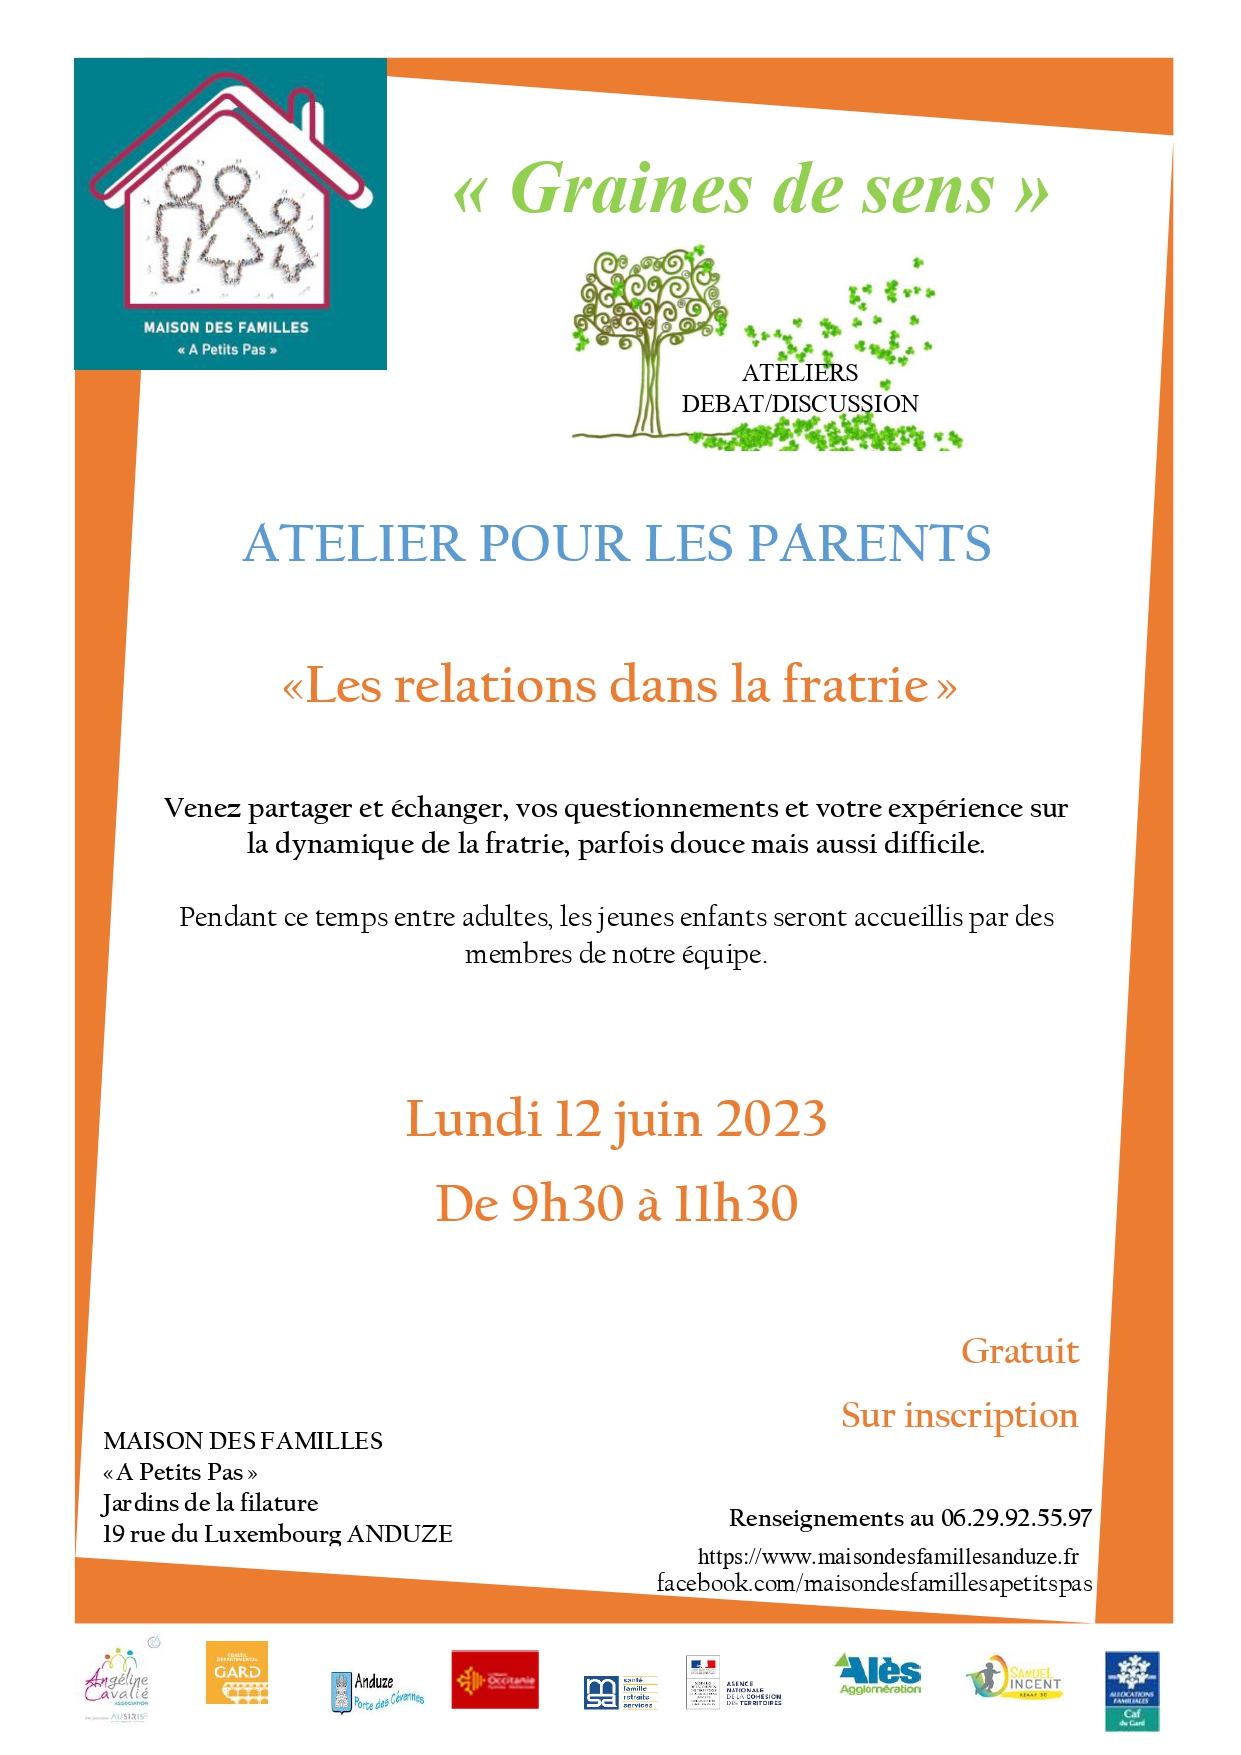 Atelier pour les Parents "Les relations dans la Fratrie"